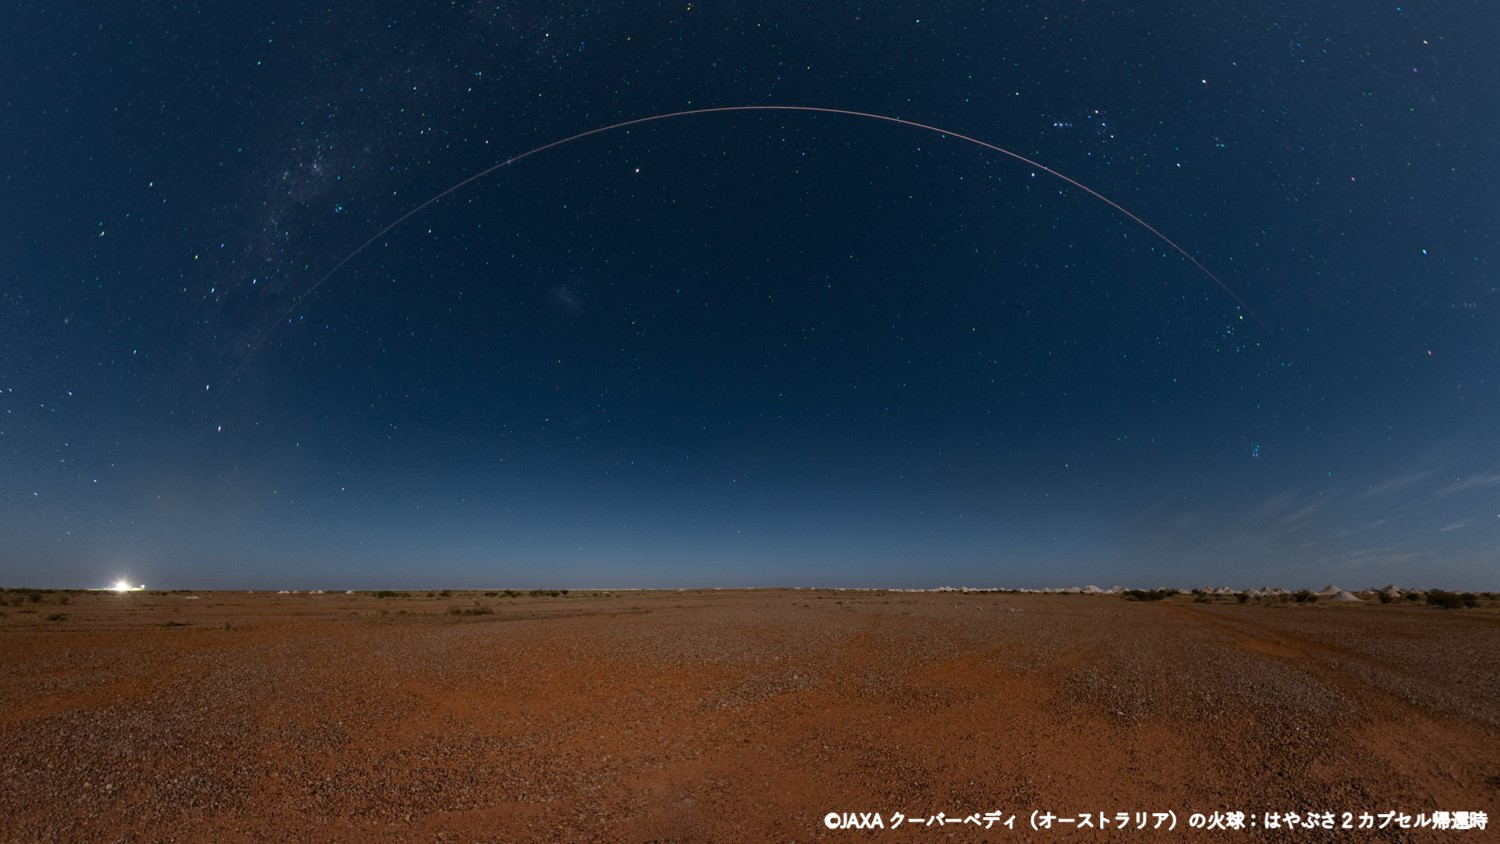 クーバーベディ（オーストラリア）の火球：はやぶさ２カプセル帰還時